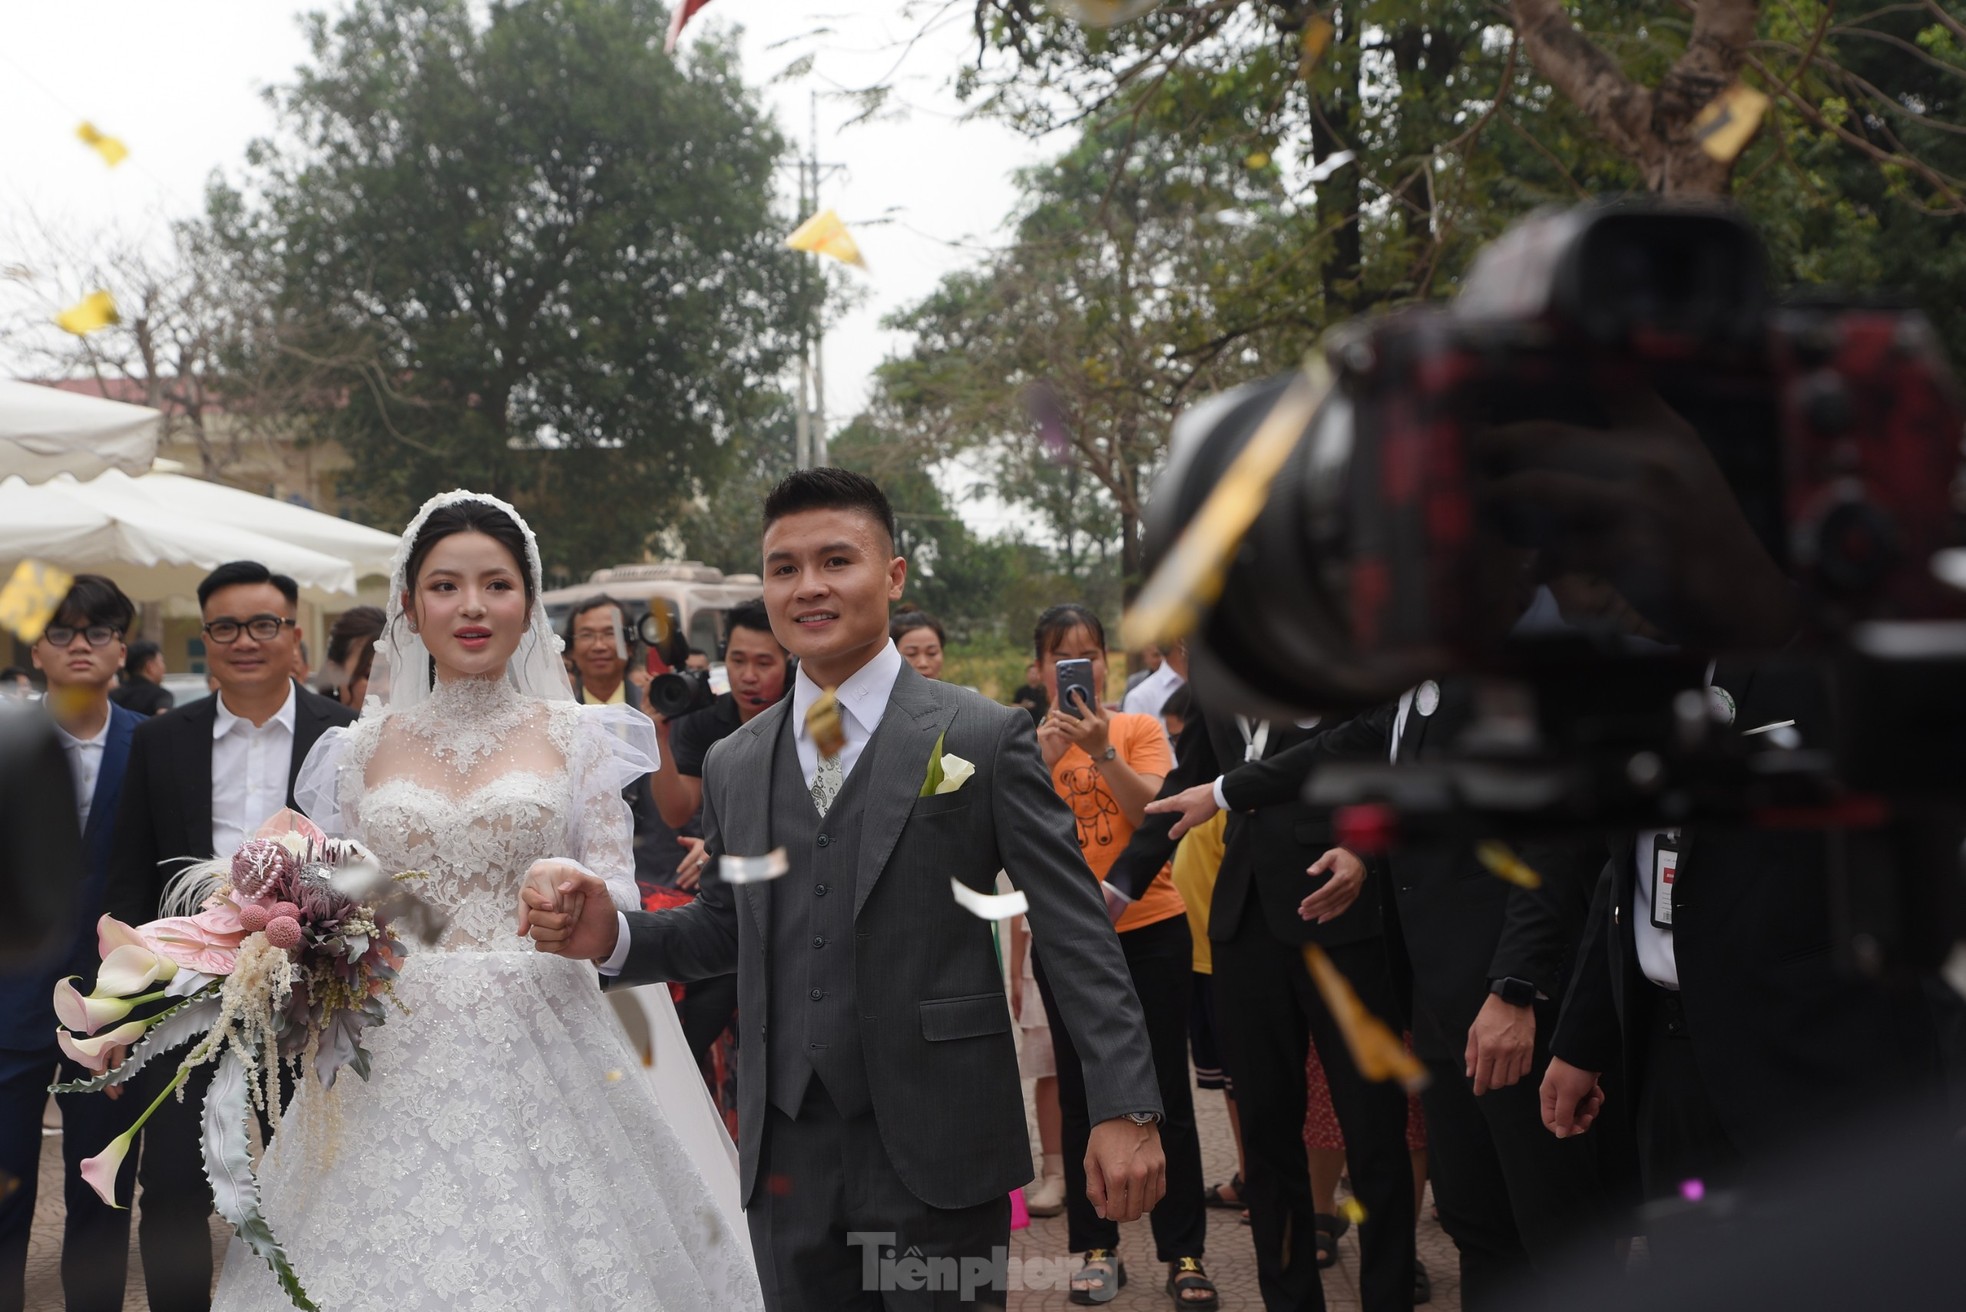 Diện váy cưới cúp ngực 150 triệu đồng, Chu Thanh Huyền rạng ngời bên Quang Hải ảnh 4